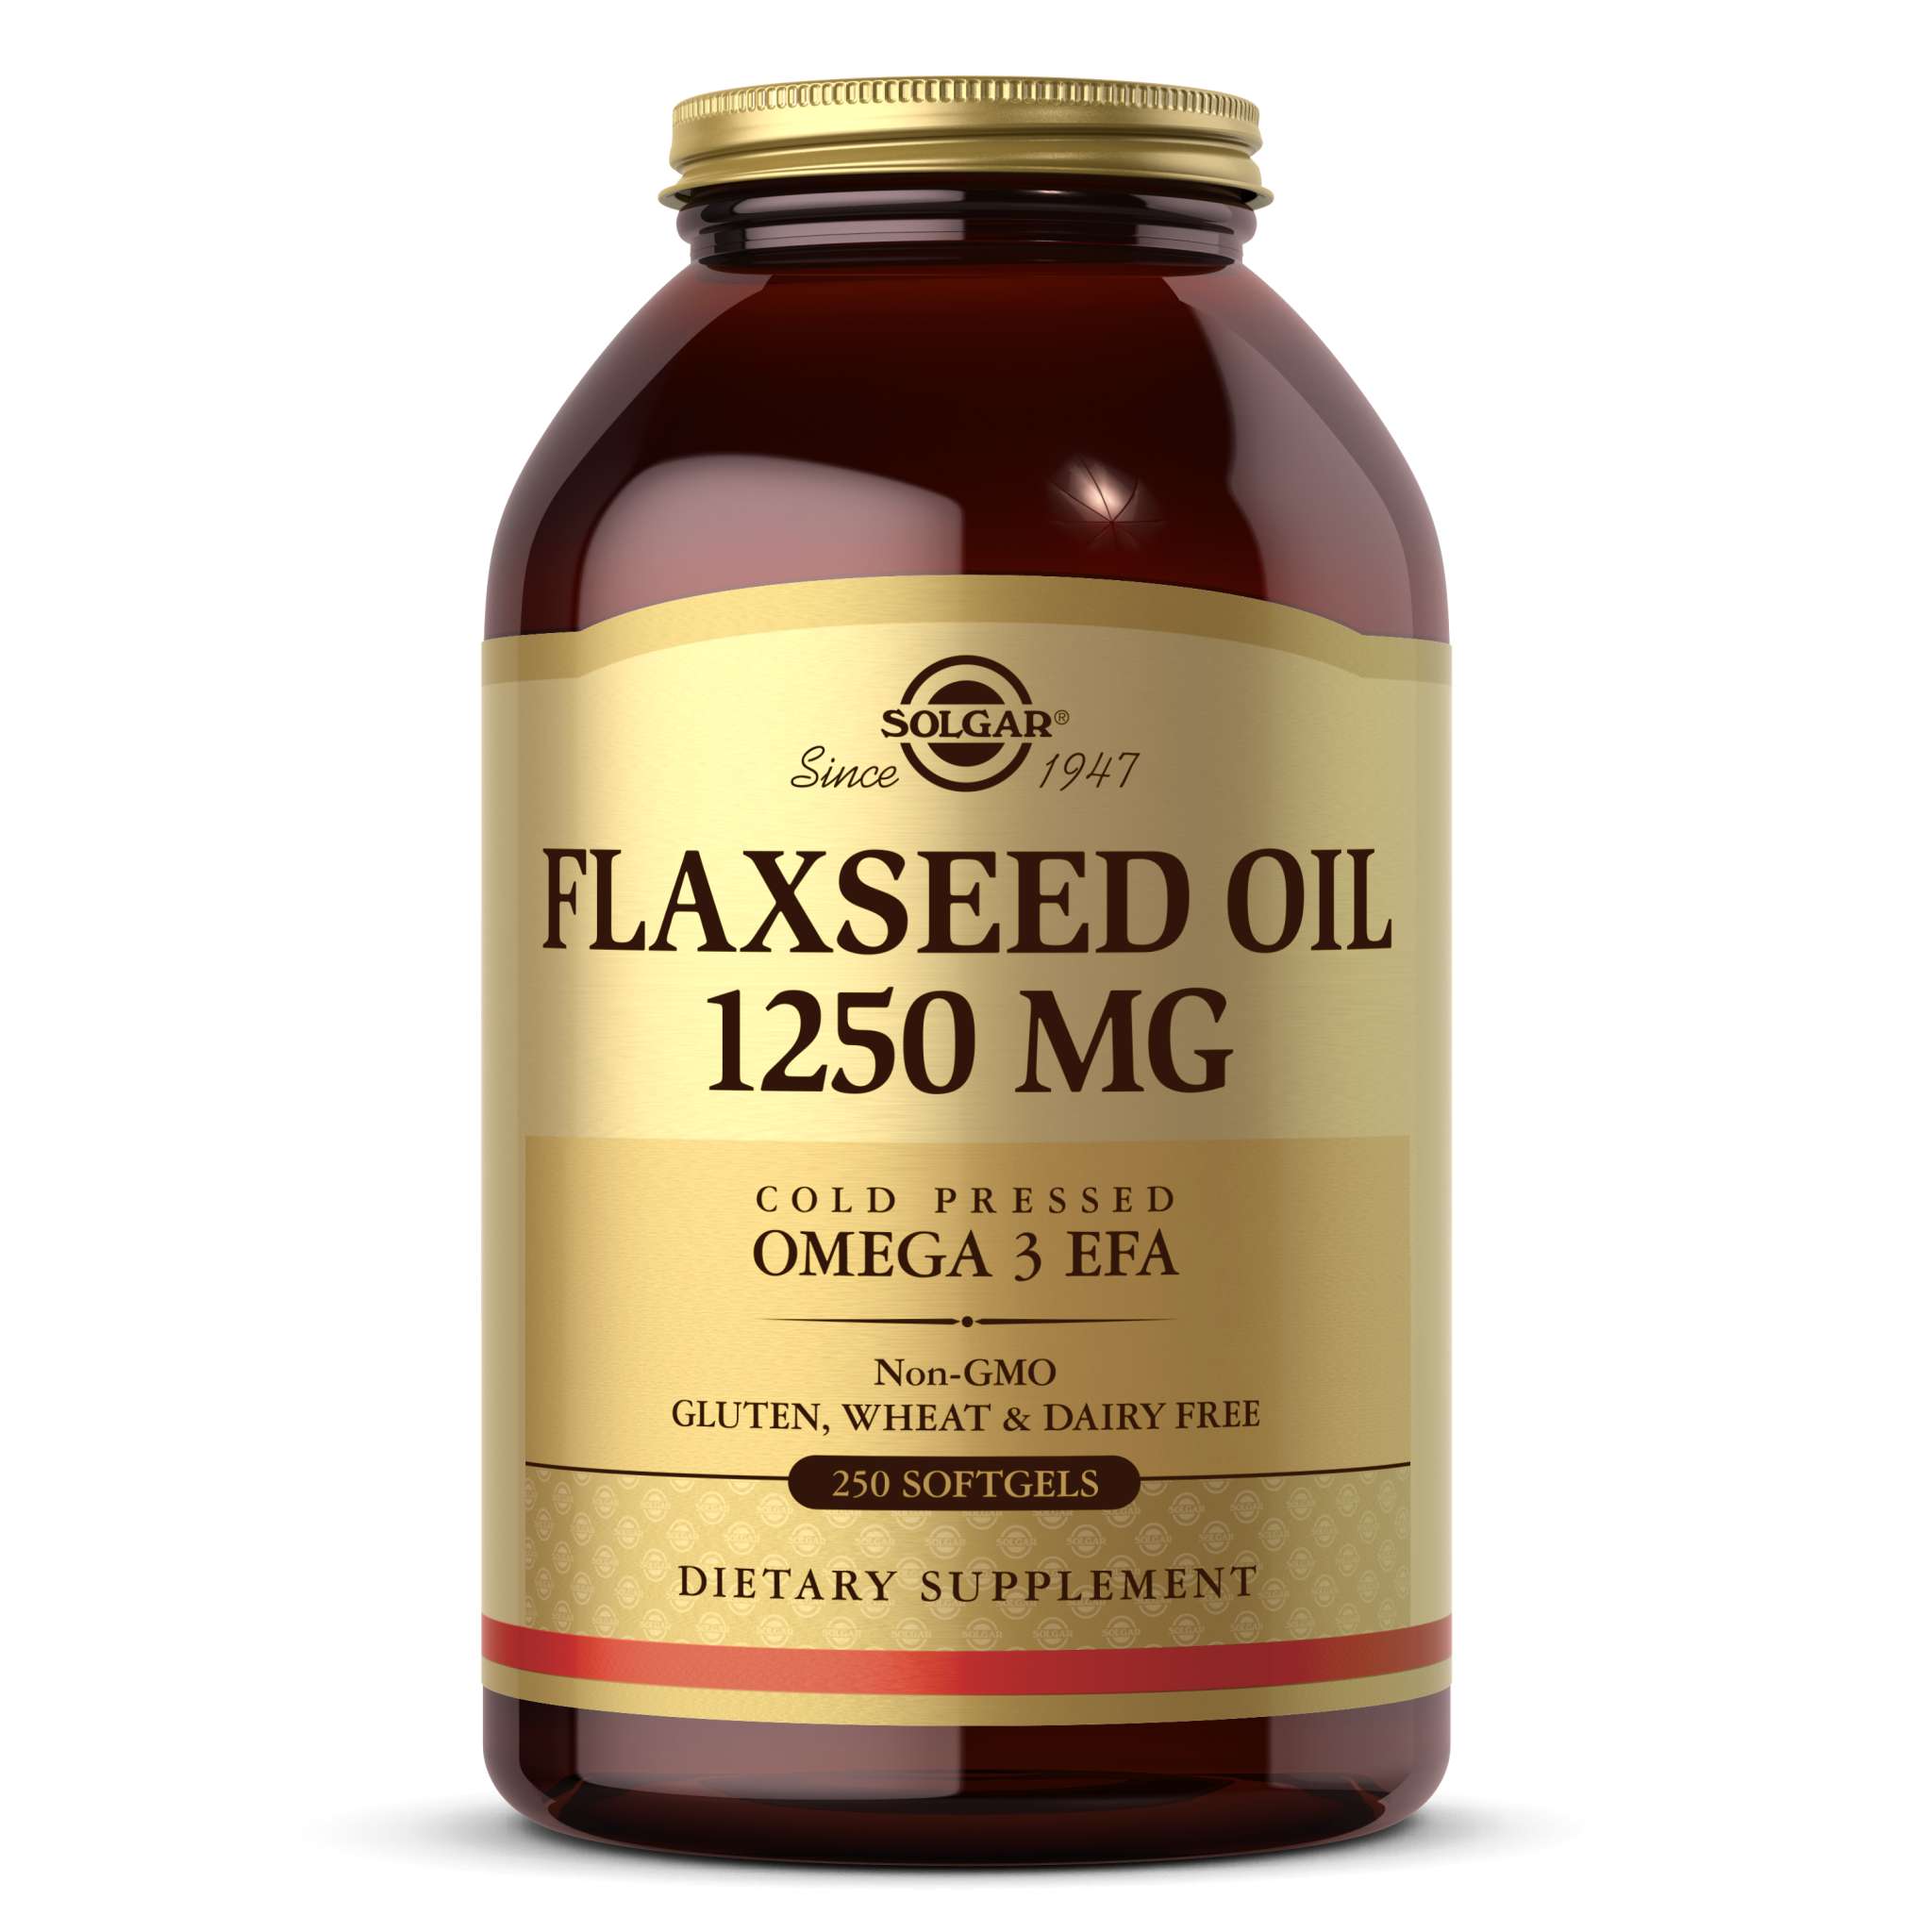 Solgar - Flaxseed Oil softgel 1250 mg